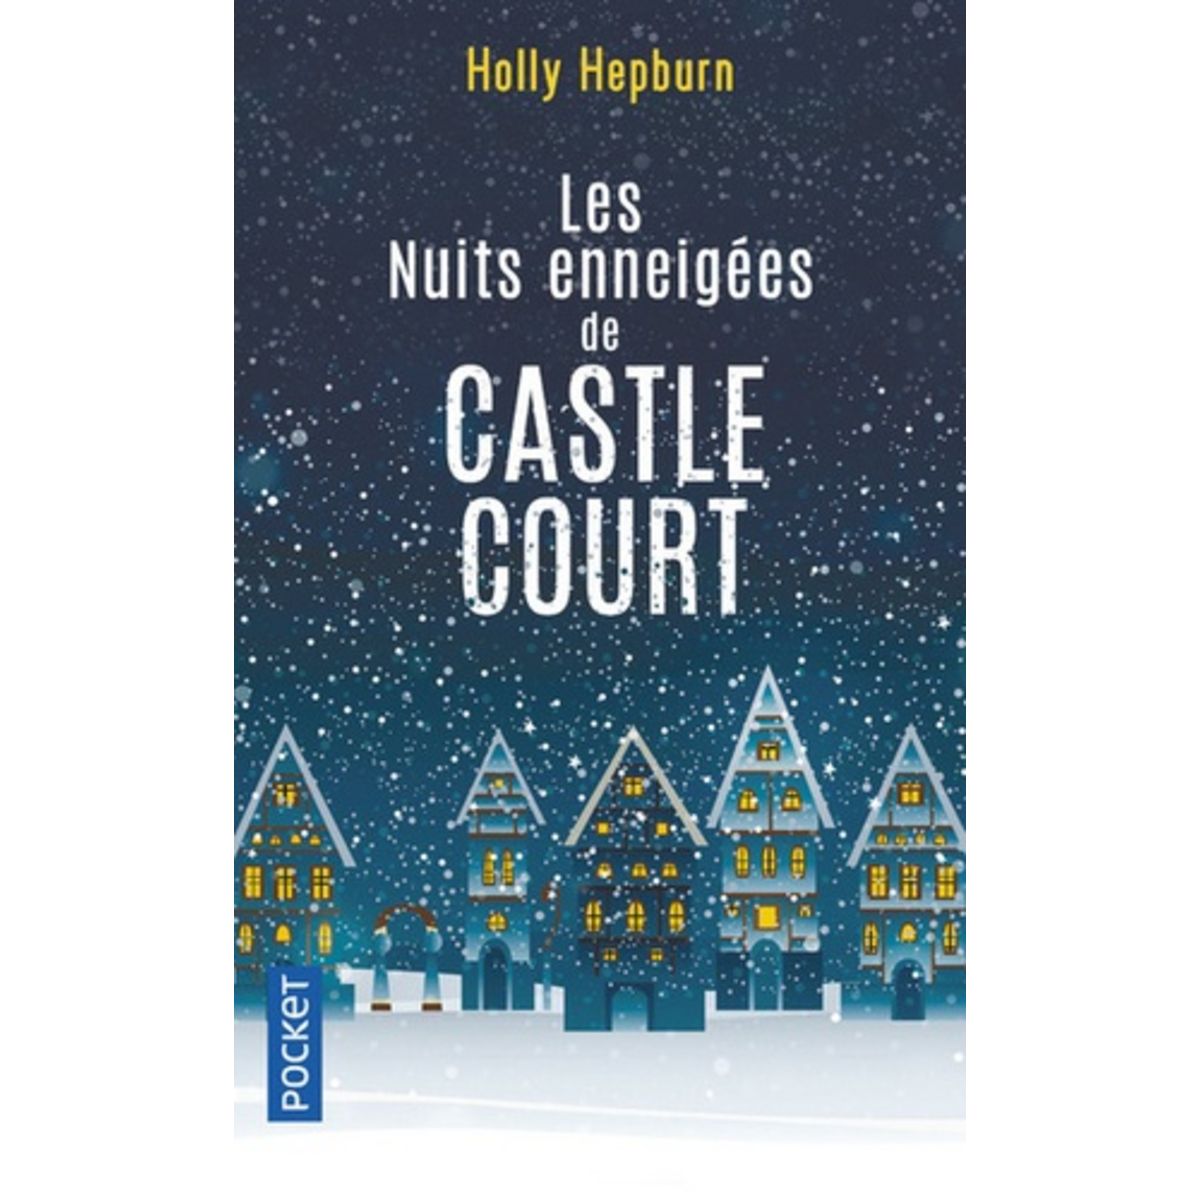  LES NUITS ENNEIGEES DE CASTLE COURT, Hepburn Holly